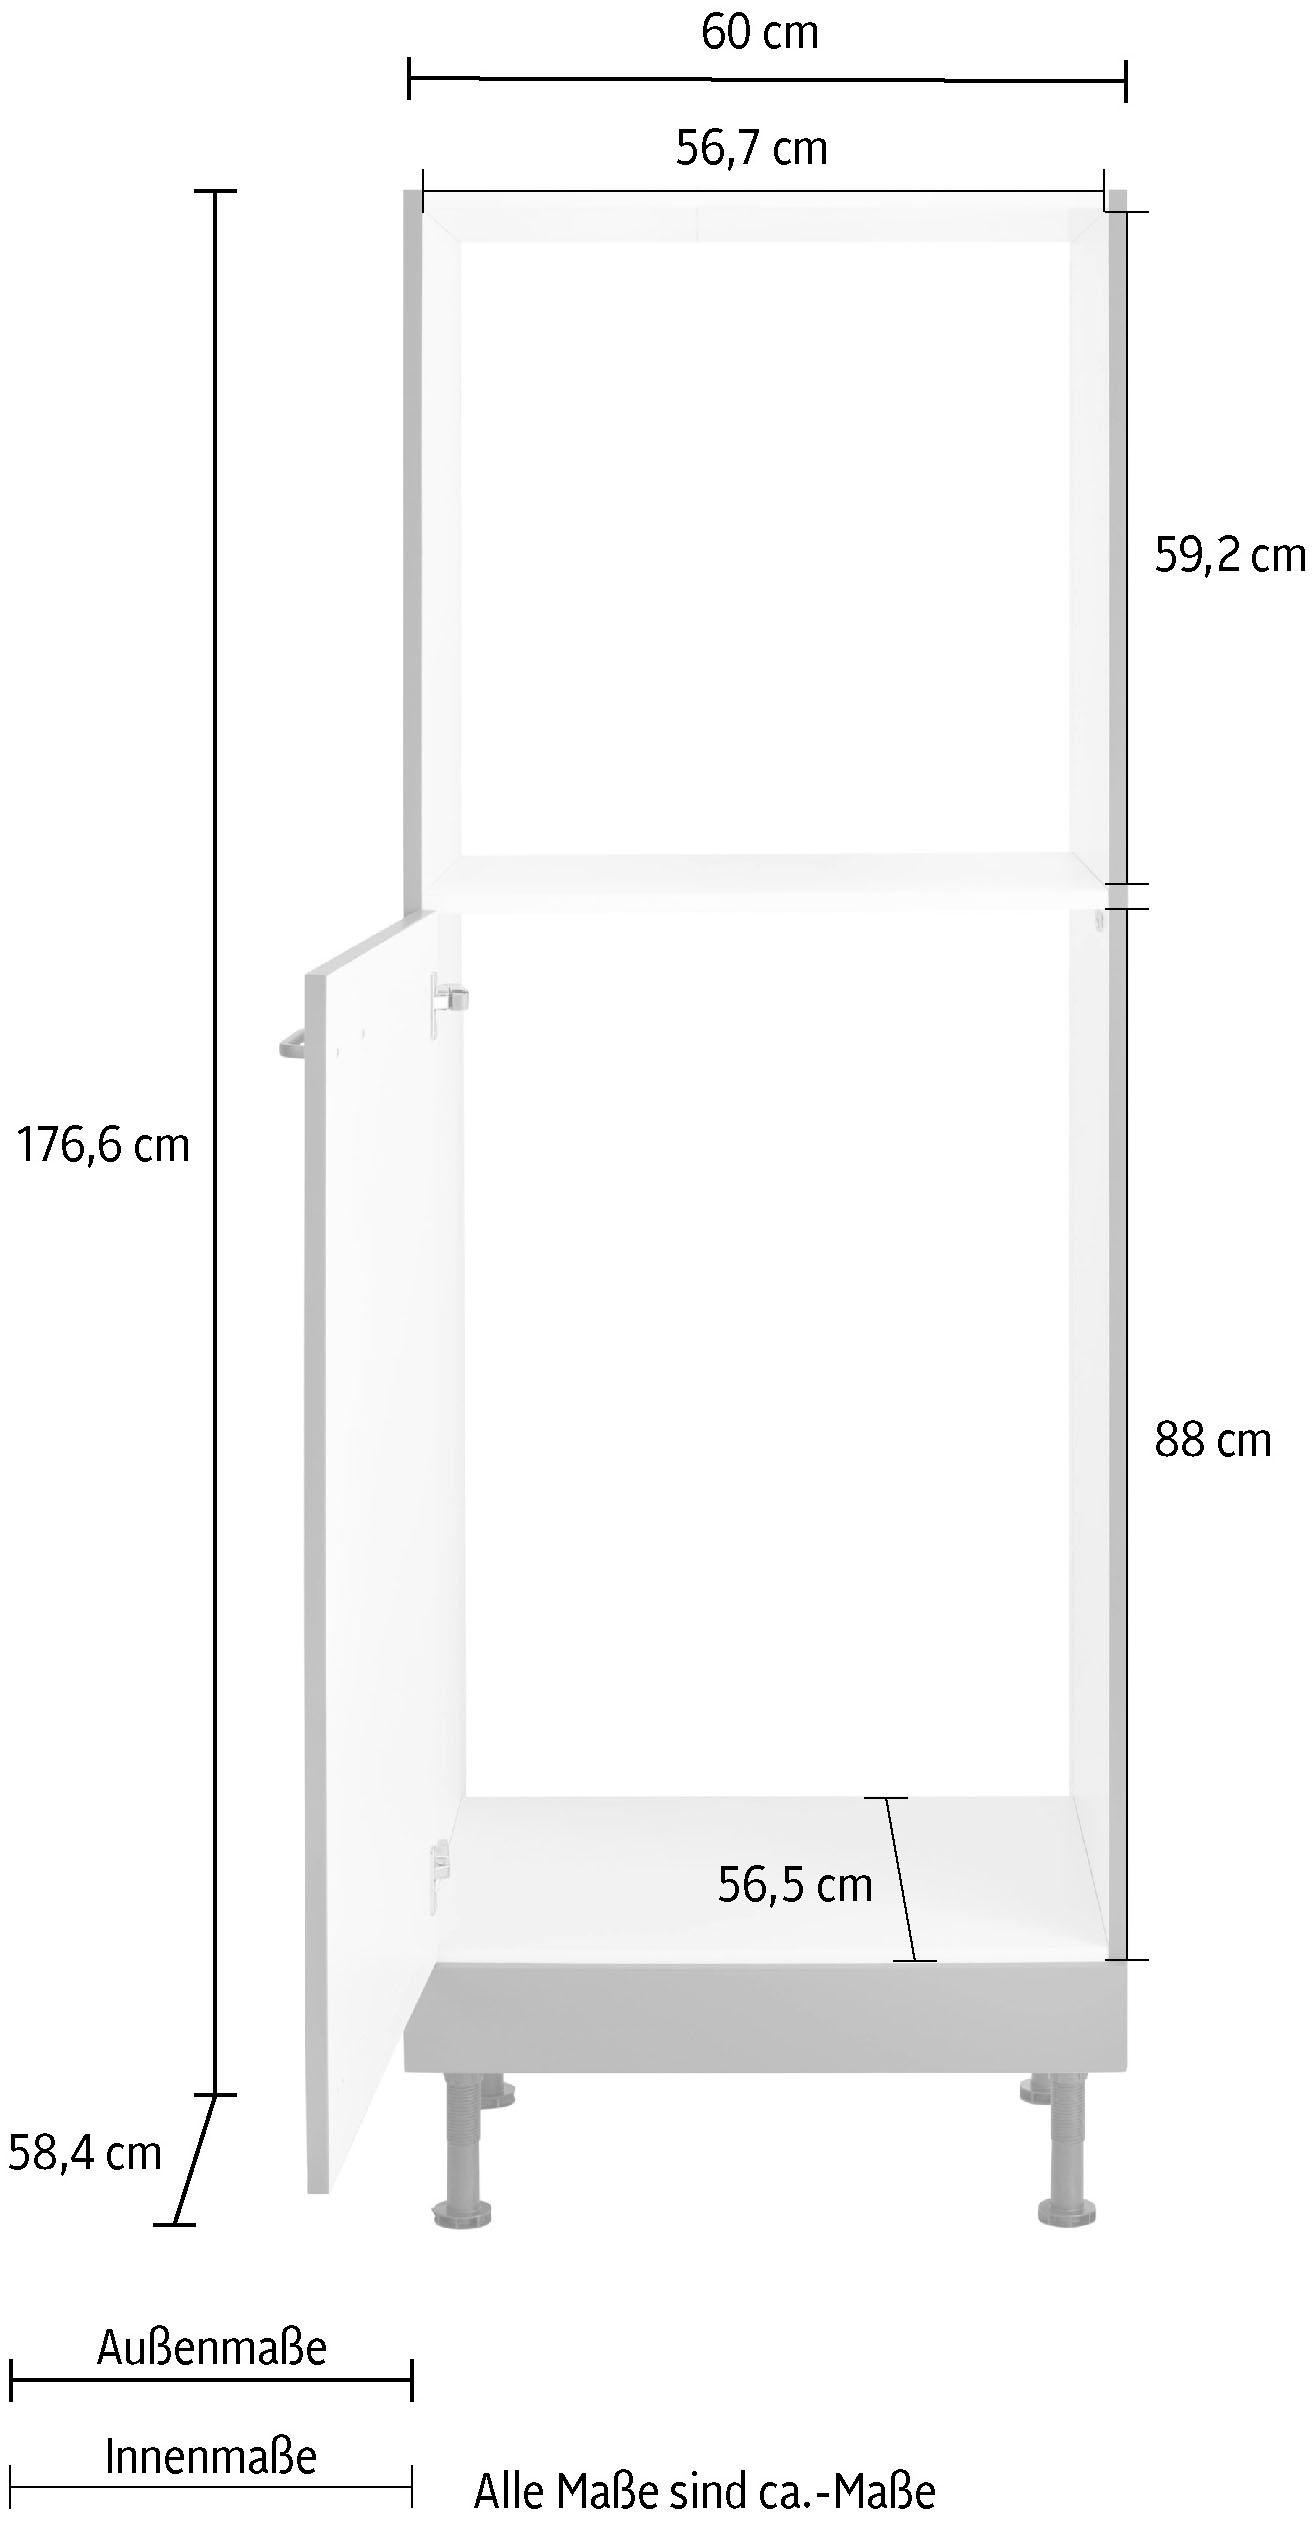 OPTIFIT Backofen/Kühlumbauschrank »Elga«, mit Soft-Close-Funktion, höhenverstellbaren Füssen, Breite 60 cm